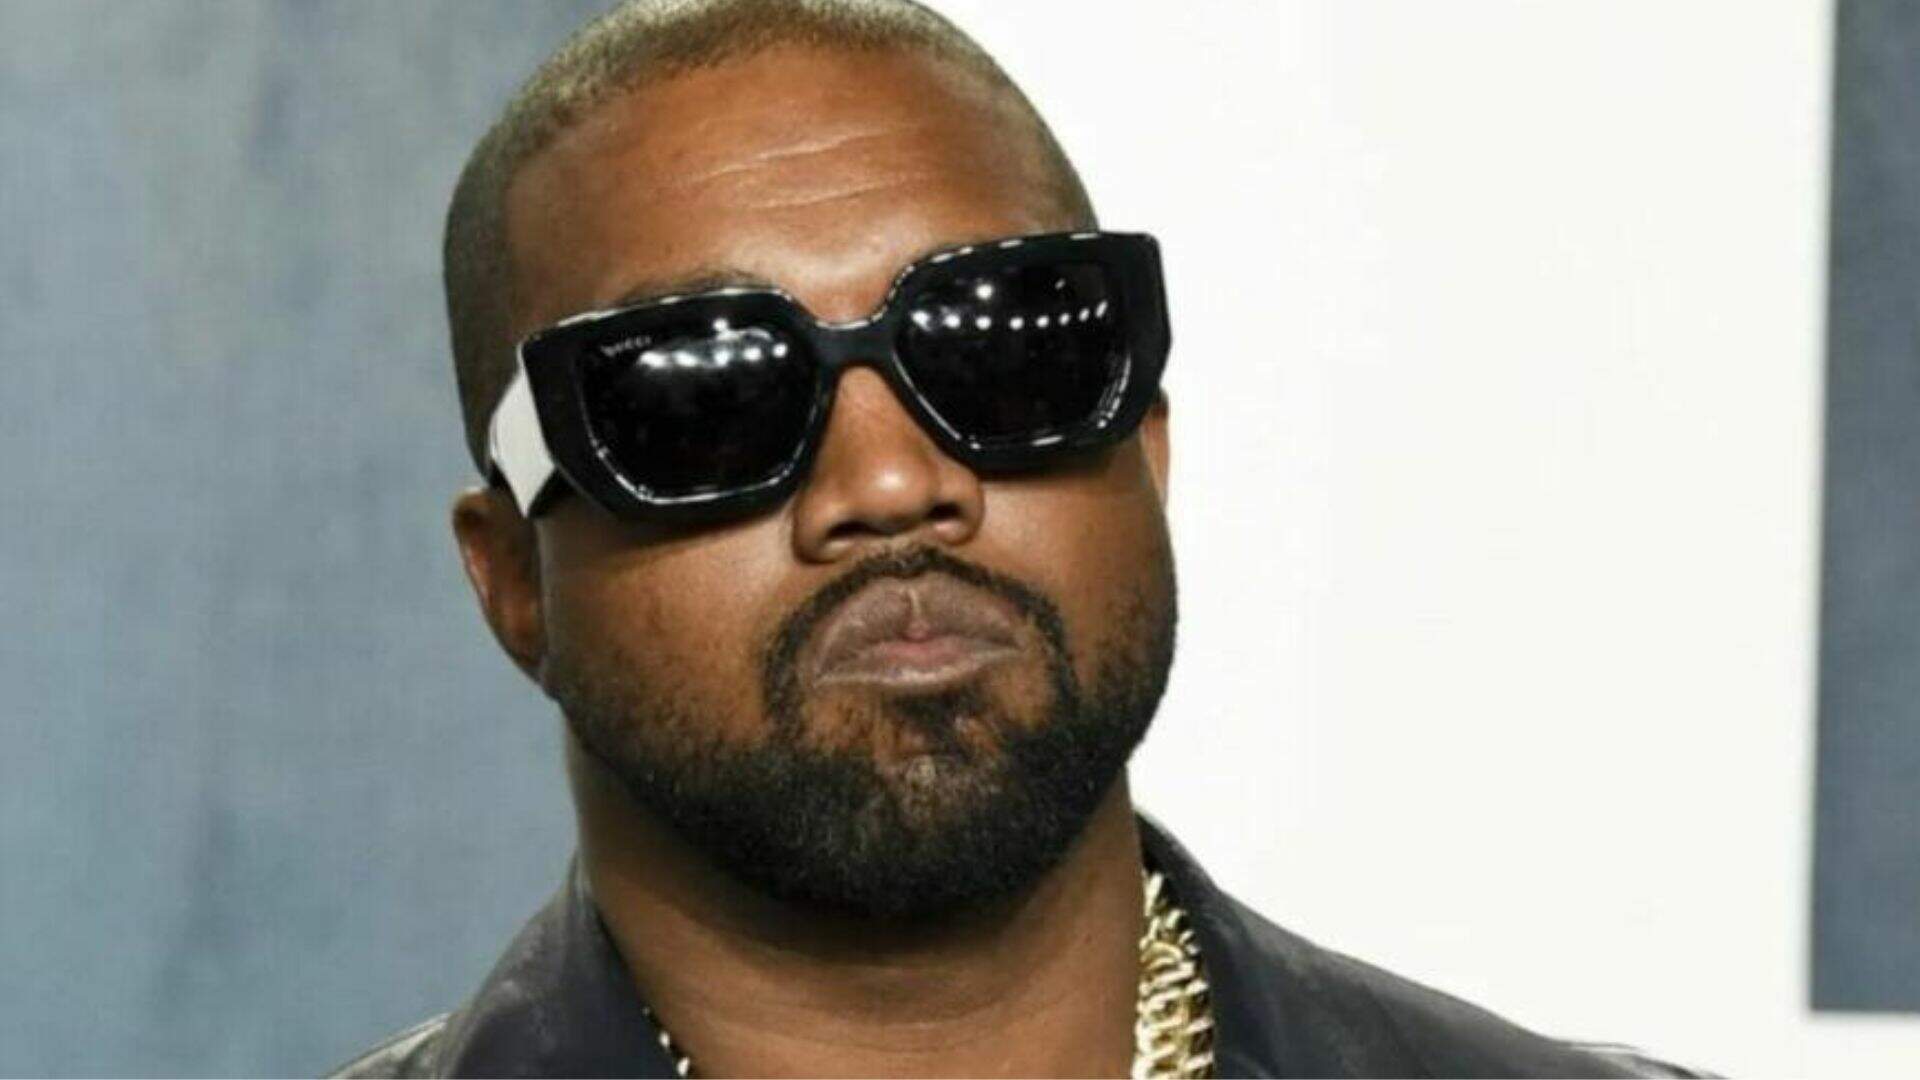 Adidas anuncia fim da parceria com Kanye West após declarações antissemitas - Metropolitana FM